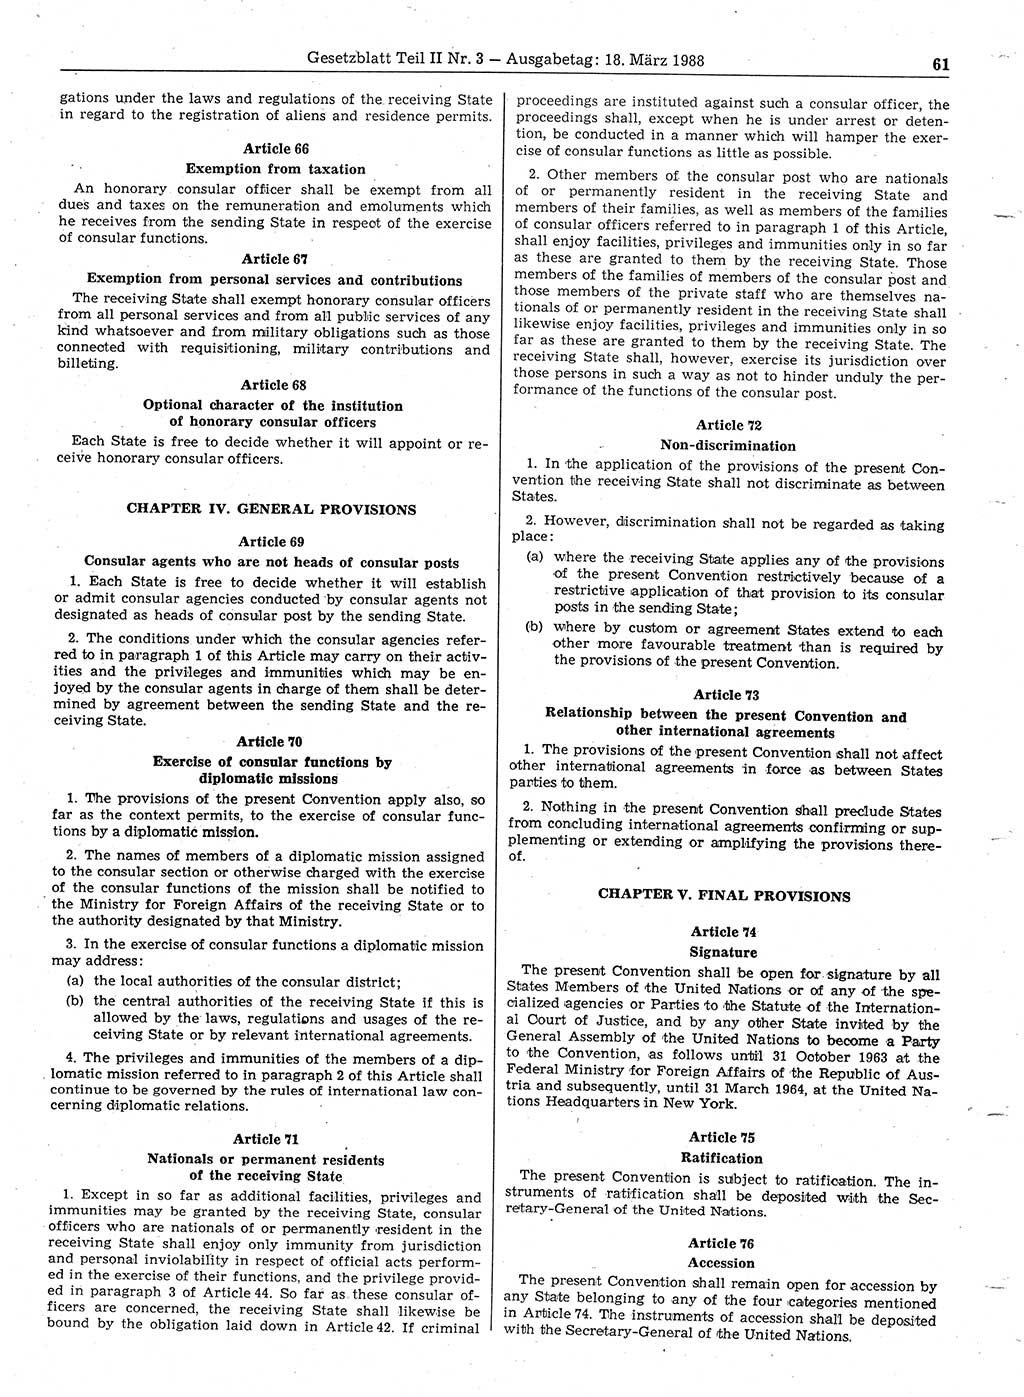 Gesetzblatt (GBl.) der Deutschen Demokratischen Republik (DDR) Teil ⅠⅠ 1988, Seite 61 (GBl. DDR ⅠⅠ 1988, S. 61)